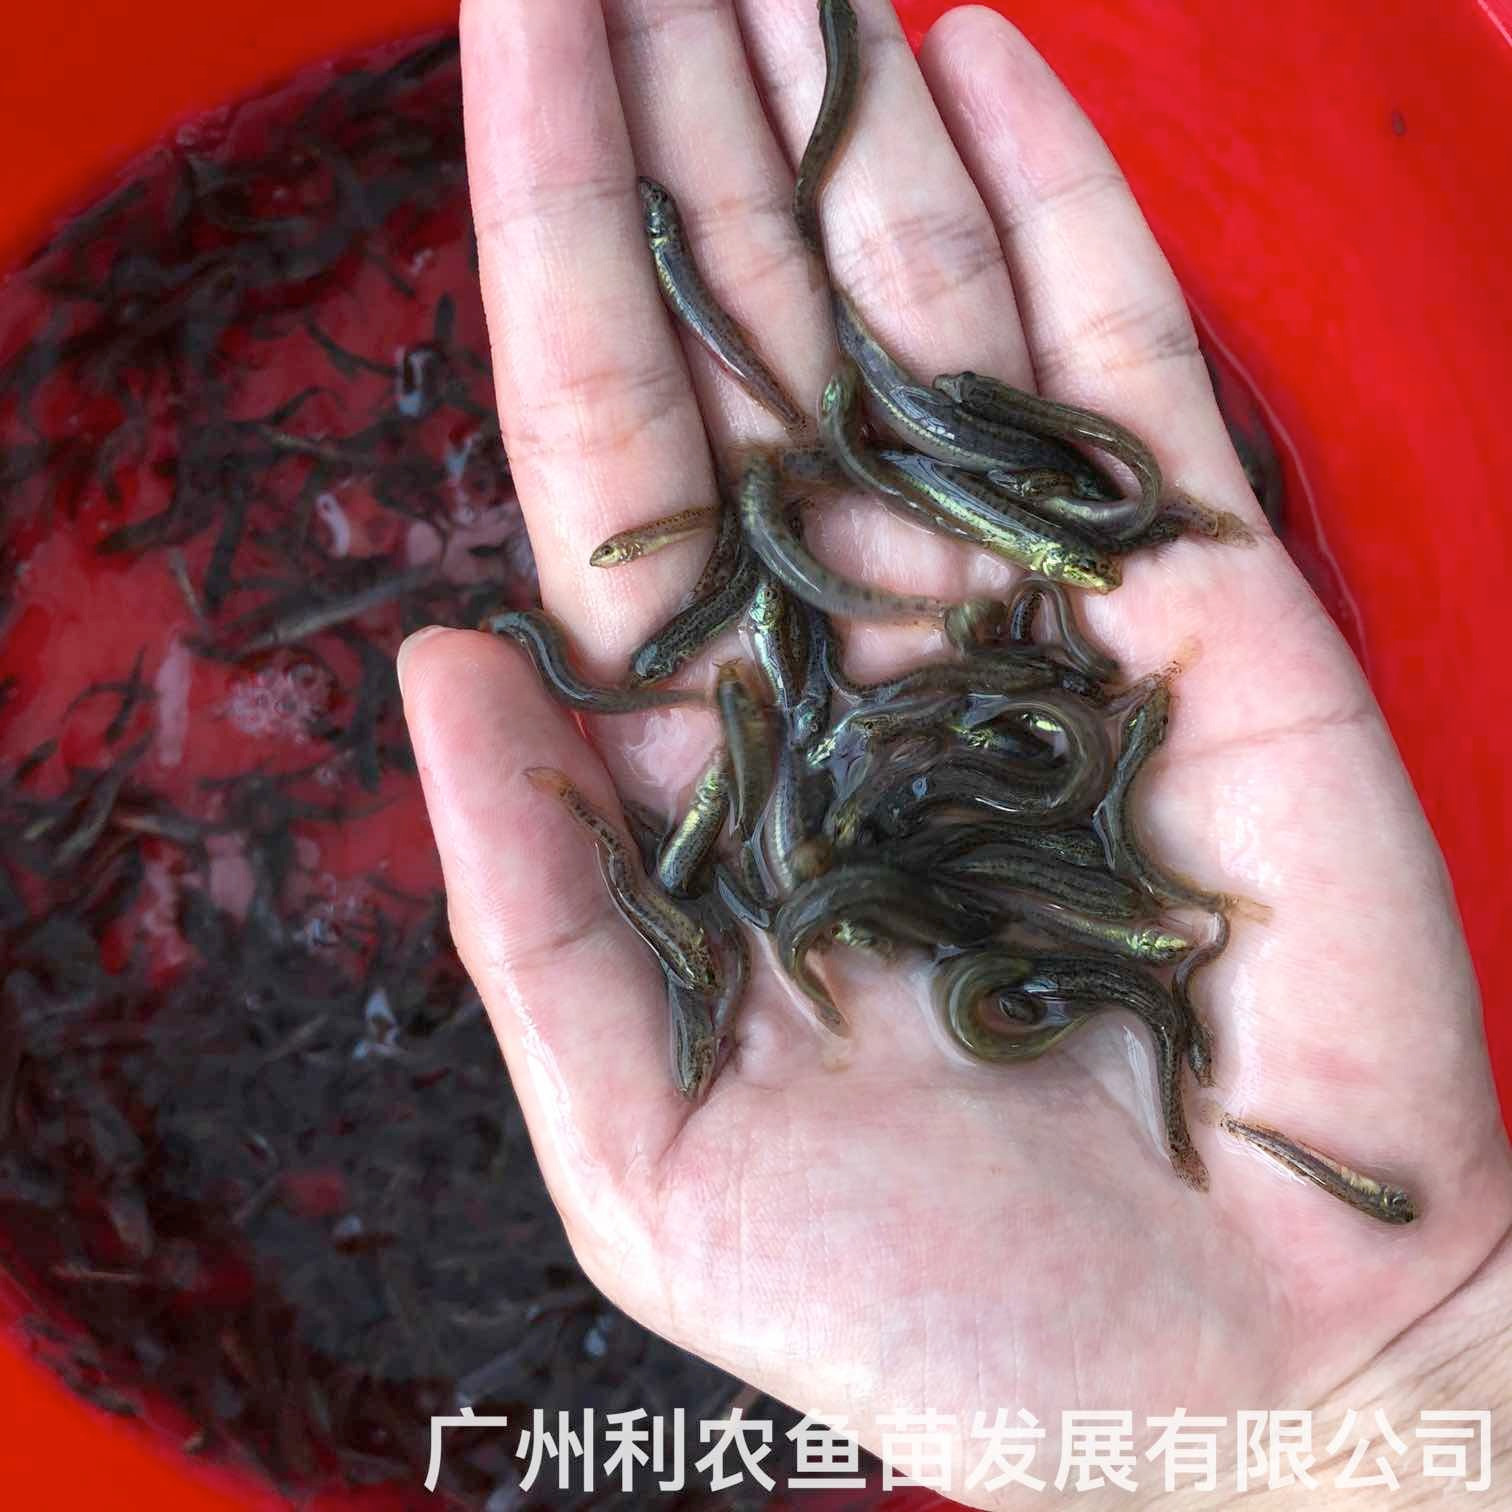 广西贺州台湾泥鳅苗出售广西玉林泥鳅鱼苗批发